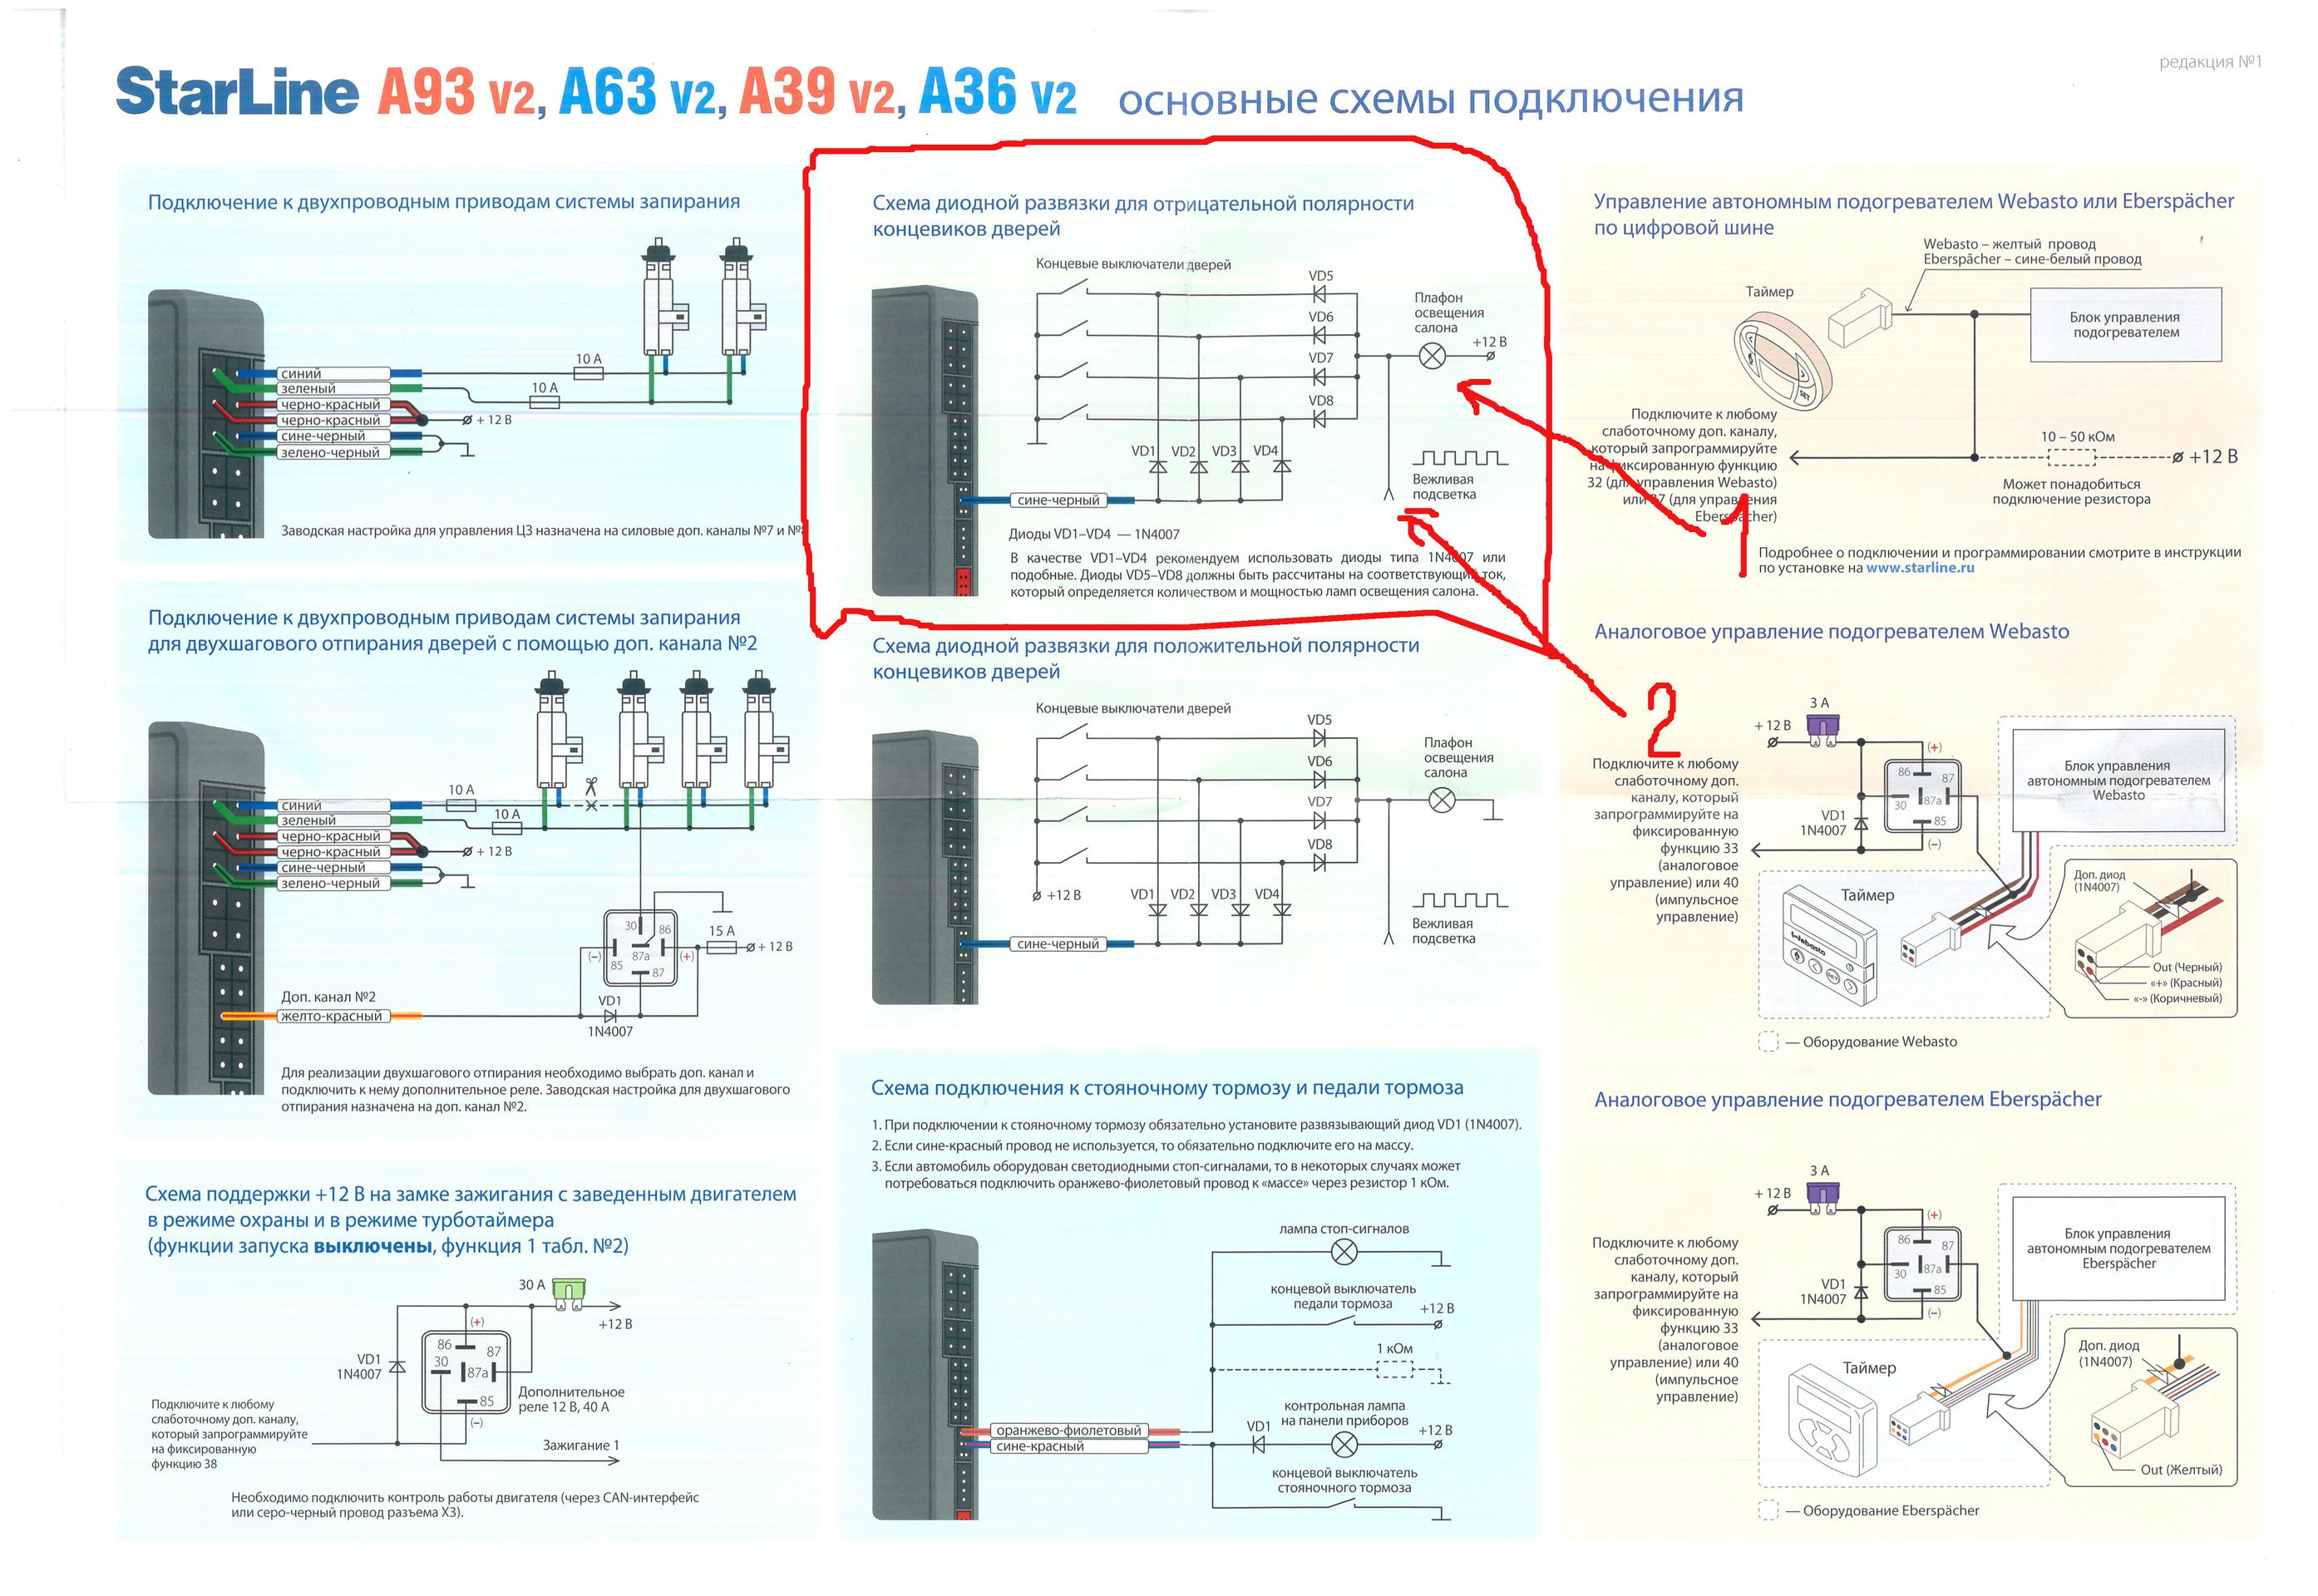 Привязка а93. Схема подключения сигнализации старлайн а93 v2. Схема старлайн s96v2. STARLINE a63 v2 схема подключения. Старлайн s96 v2 схема подключения.